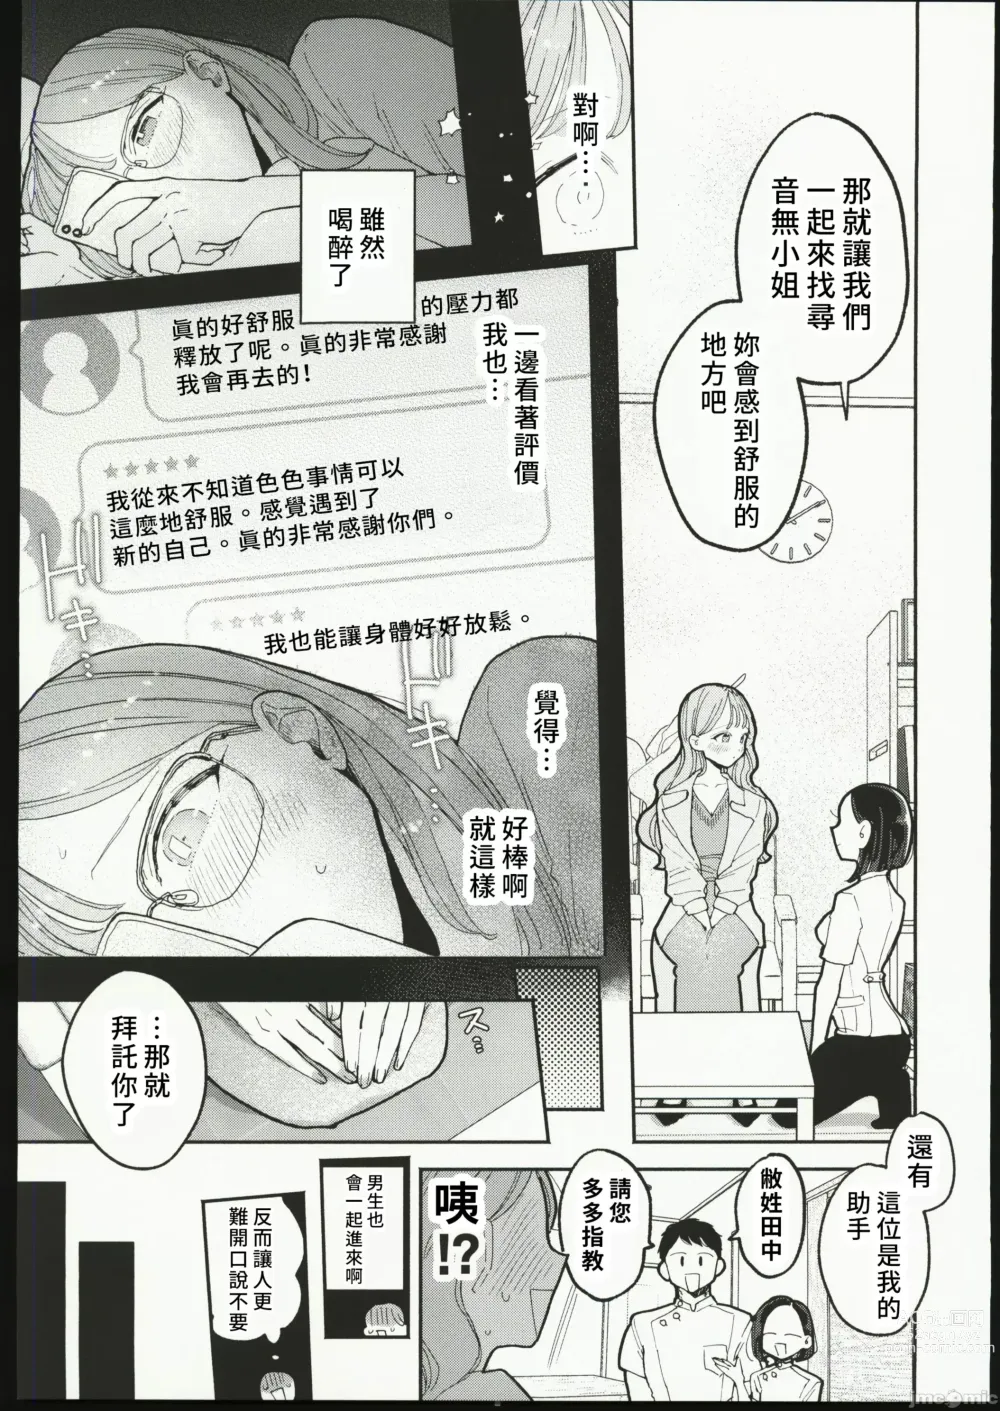 Page 8 of manga 絶頂リフレ 駅前の性感マッサージ店で○○になっちゃう女の子の話